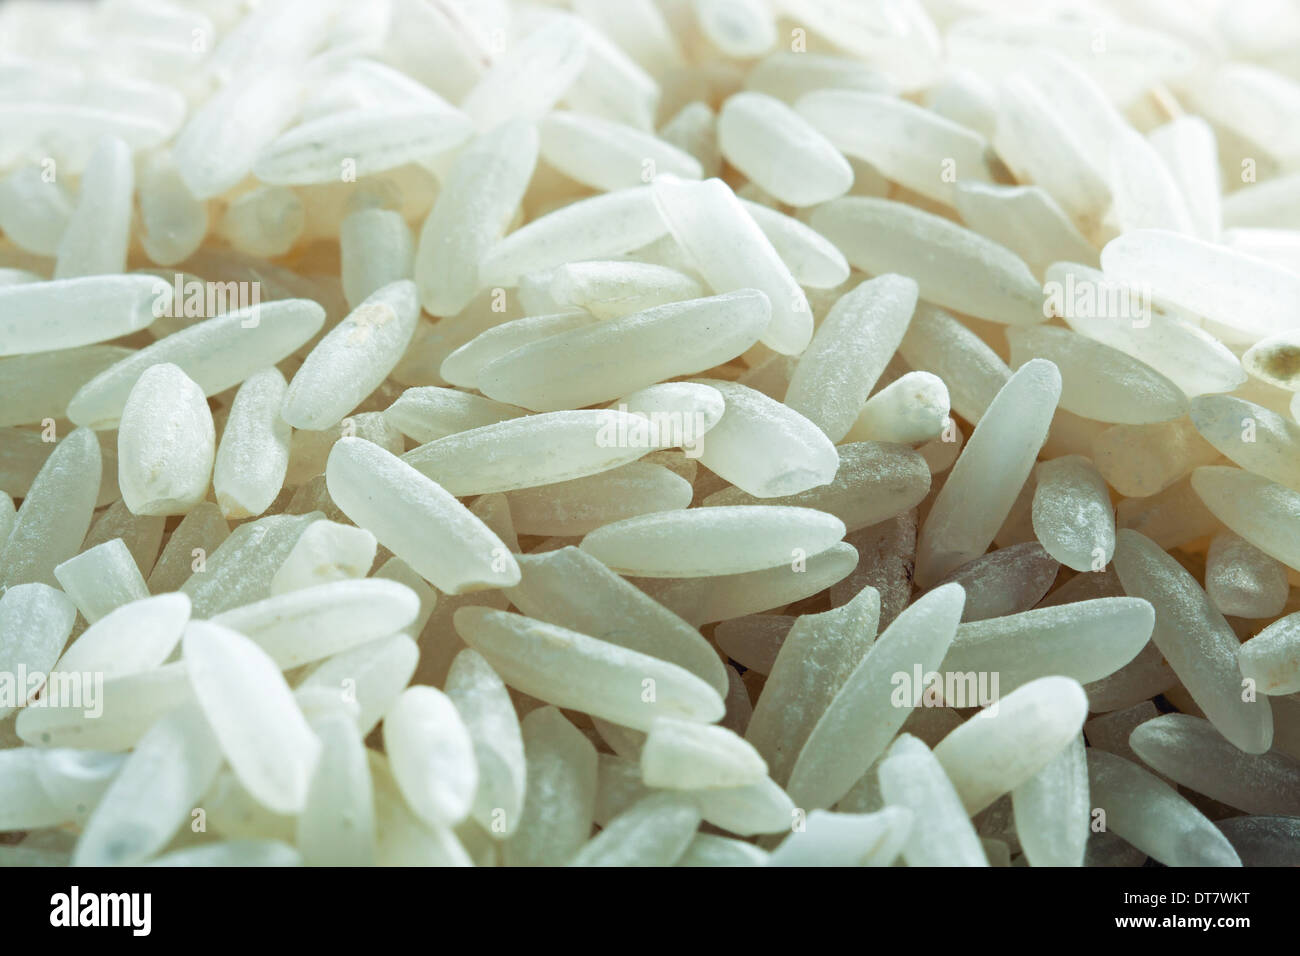 White uncooked rice- macro shot Stock Photo